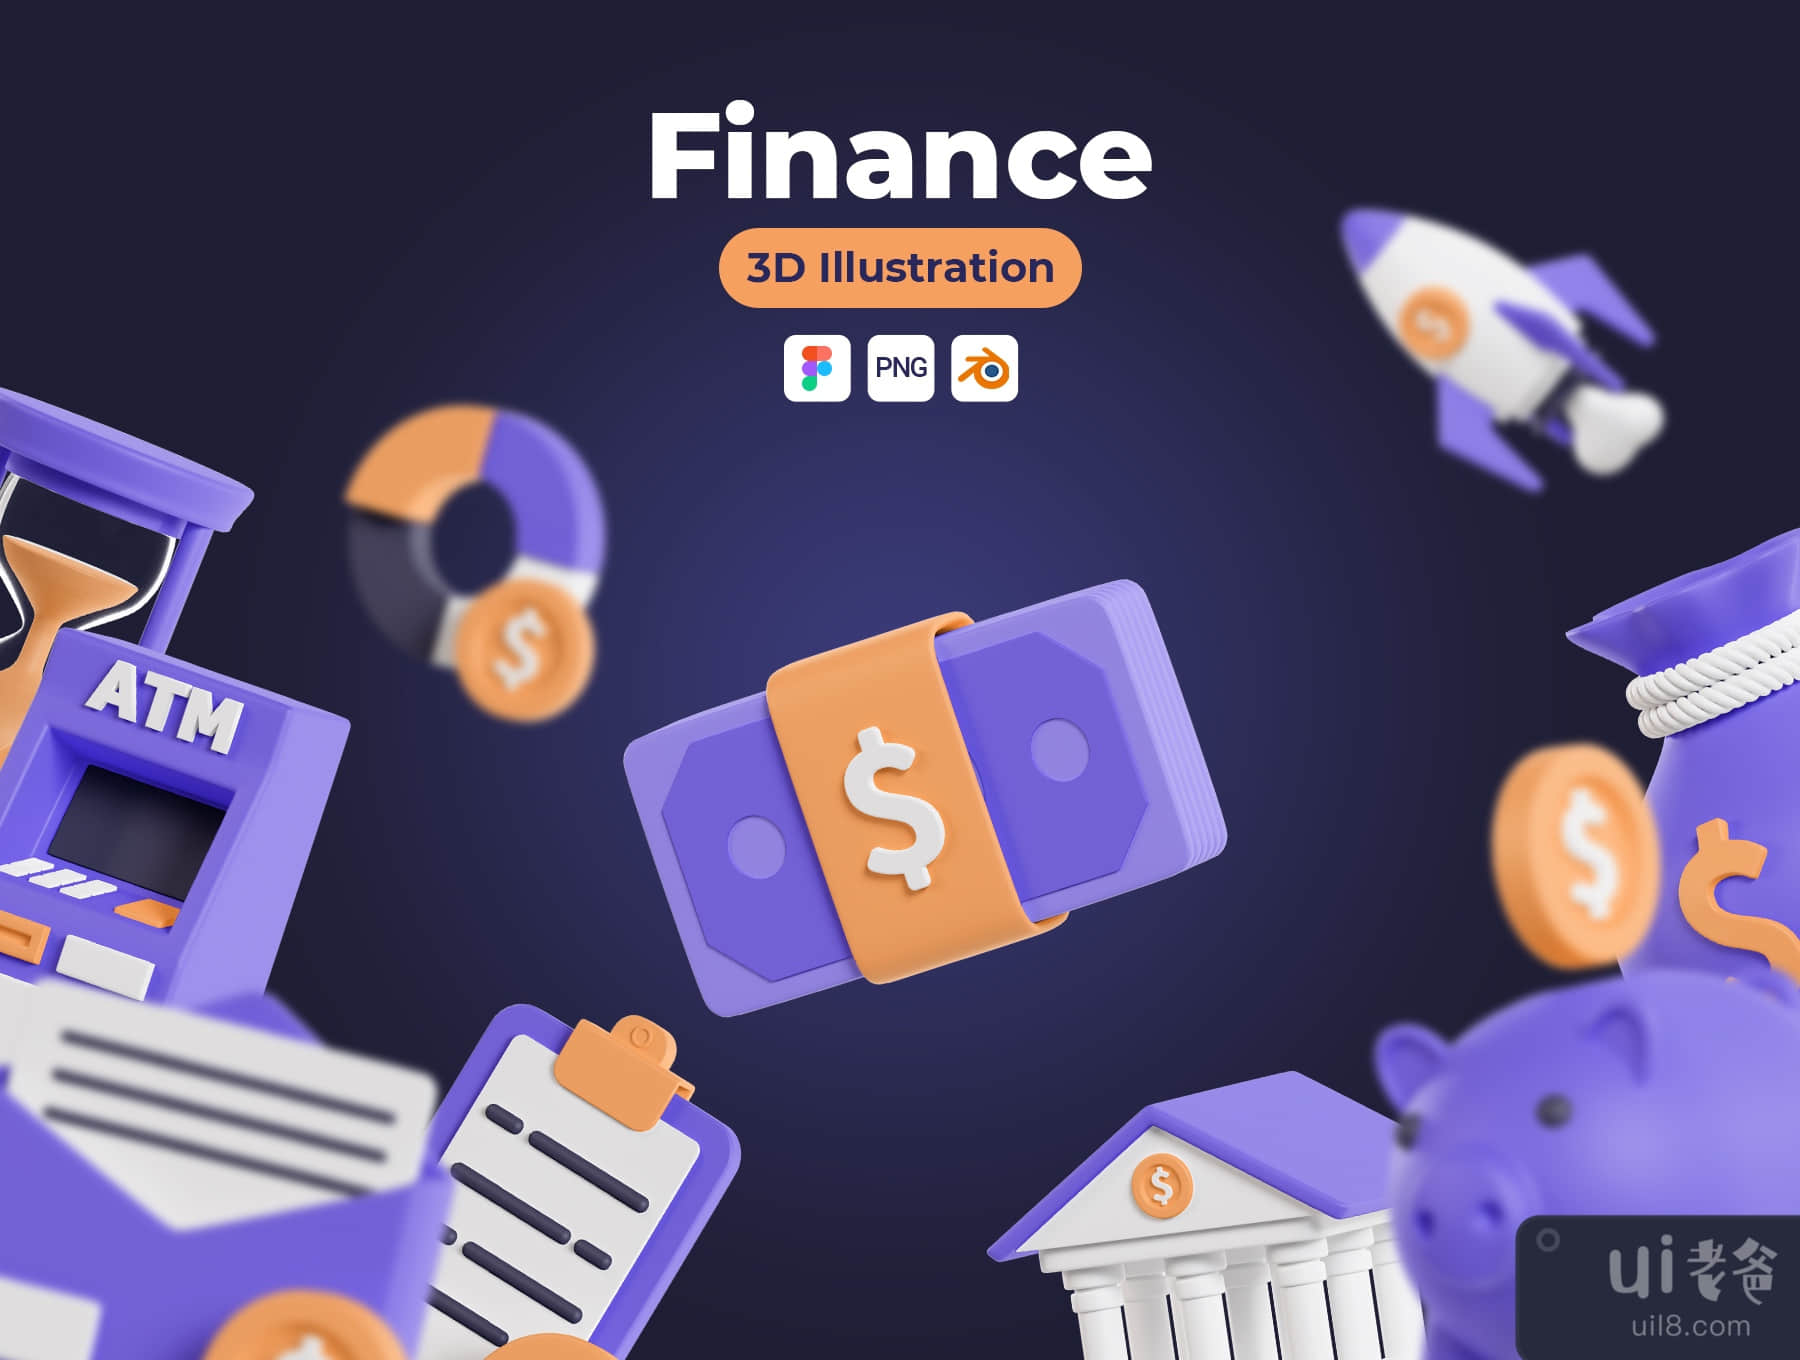 金融3D图标 (Finance 3D Icons)插图